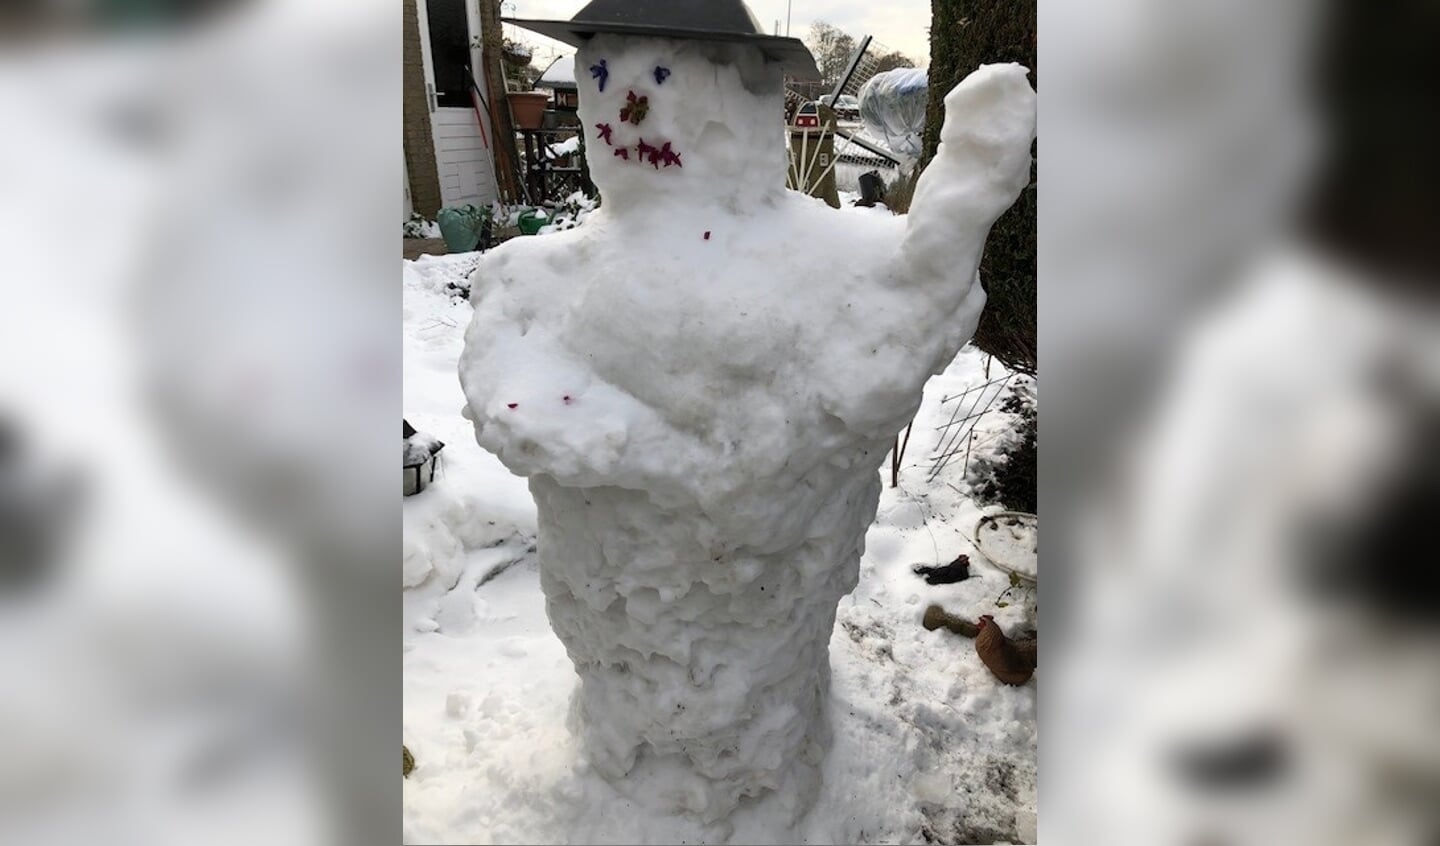 De familie Van der Meer stuurde deze sneeuwpop in. 